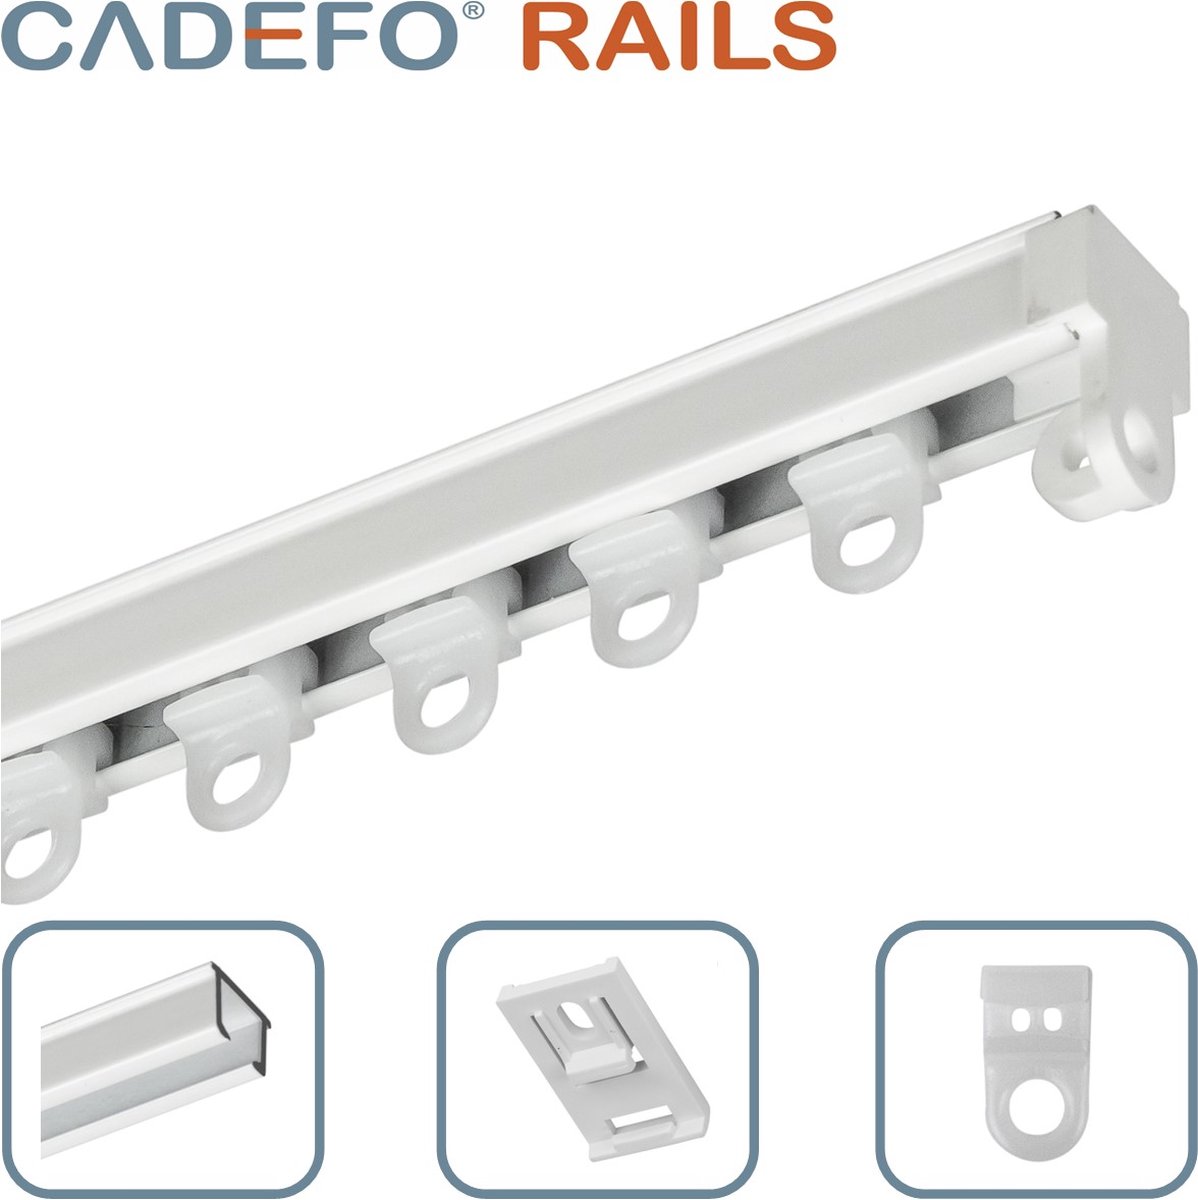 CADEFO RAILS (351 - 400 cm) Gordijnrails - Compleet op maat! - UIT 1 STUK - Leverbaar tot 6 meter - Plafondbevestiging - Lengte 399 cm